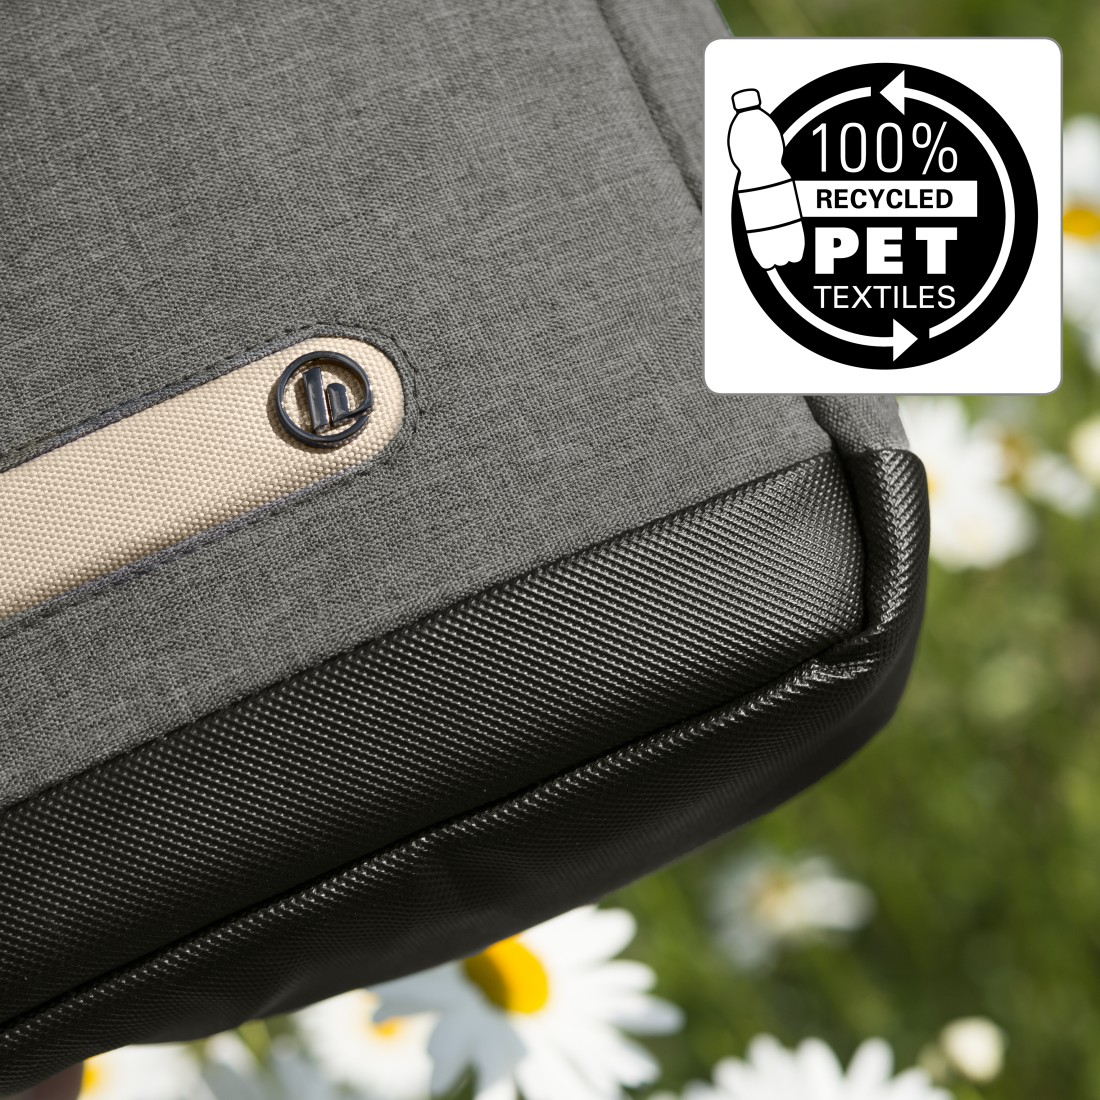 HAMA Terra aus Polyester, Universal 15.6 Recyceltem 100% Notebooktasche Zoll Umhängetasche Grau für